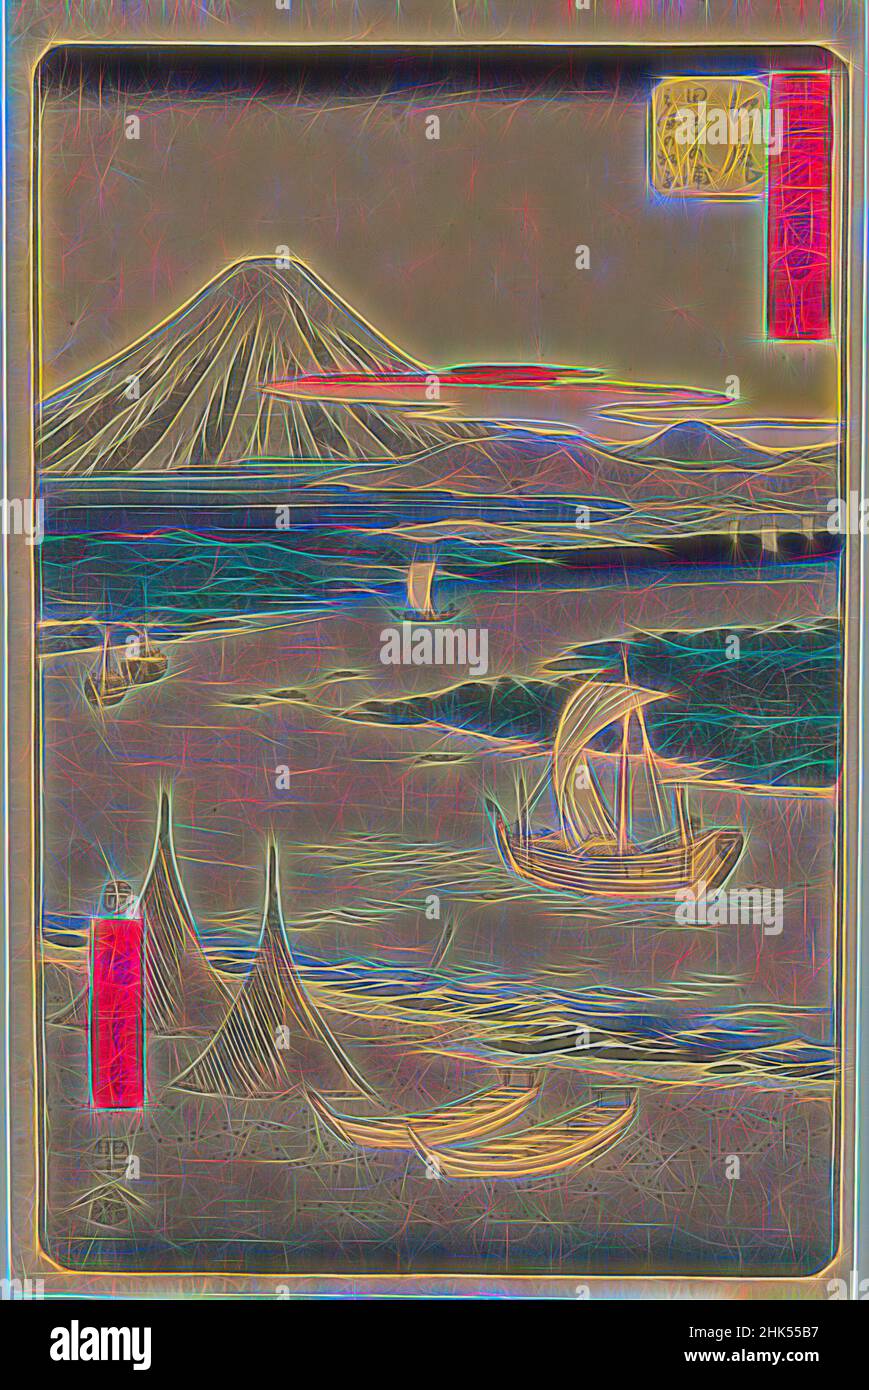 Inspiriert von No. 19, Ejiri: Tago Bay und Miho no Matsubara, aus der Serie berühmte Sehenswürdigkeiten der 53 Stationen, Utagawa Hiroshige, Ando, Japanisch, 1797-1858, Farbholzschnitt auf Papier, Japan, 1855, Edo-Periode, 14 1/4 x 9 1/4 Zoll, 36,2 x 23,5 cm, fukei-ga, Landschaft, meisho-e, Berg, Neu gestaltet von Artotop. Klassische Kunst neu erfunden mit einem modernen Twist. Design von warmen fröhlichen Leuchten der Helligkeit und Lichtstrahl Strahlkraft. Fotografie inspiriert von Surrealismus und Futurismus, umarmt dynamische Energie der modernen Technologie, Bewegung, Geschwindigkeit und Kultur zu revolutionieren Stockfoto